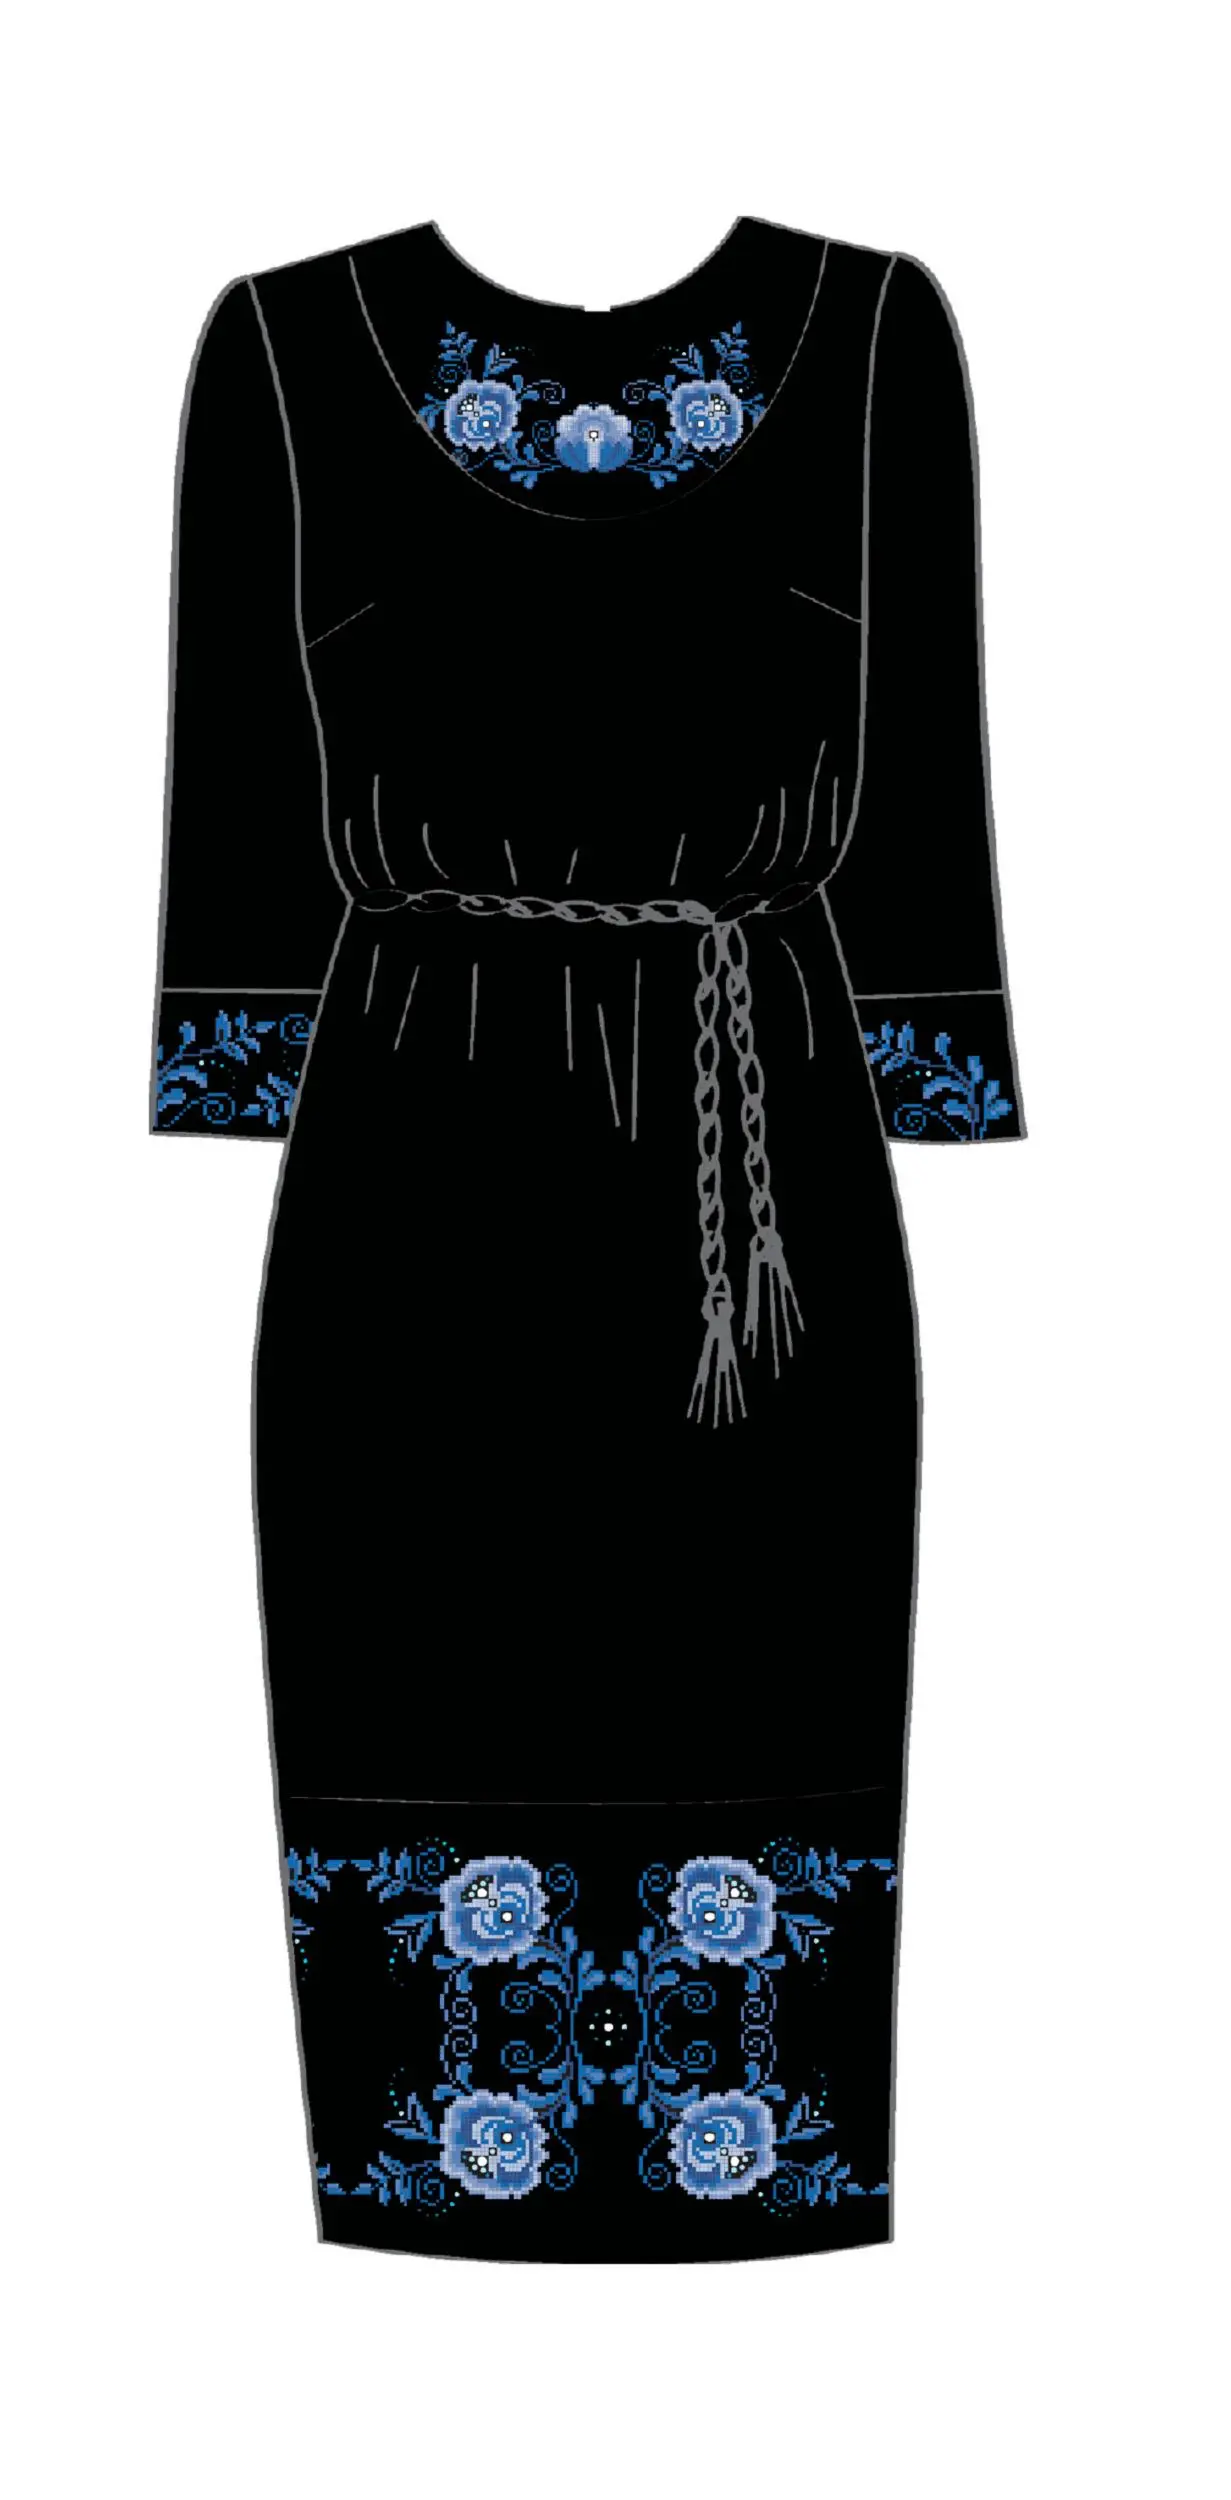 820-14/10 Плаття жіноче з поясом, чорне, розмір 46